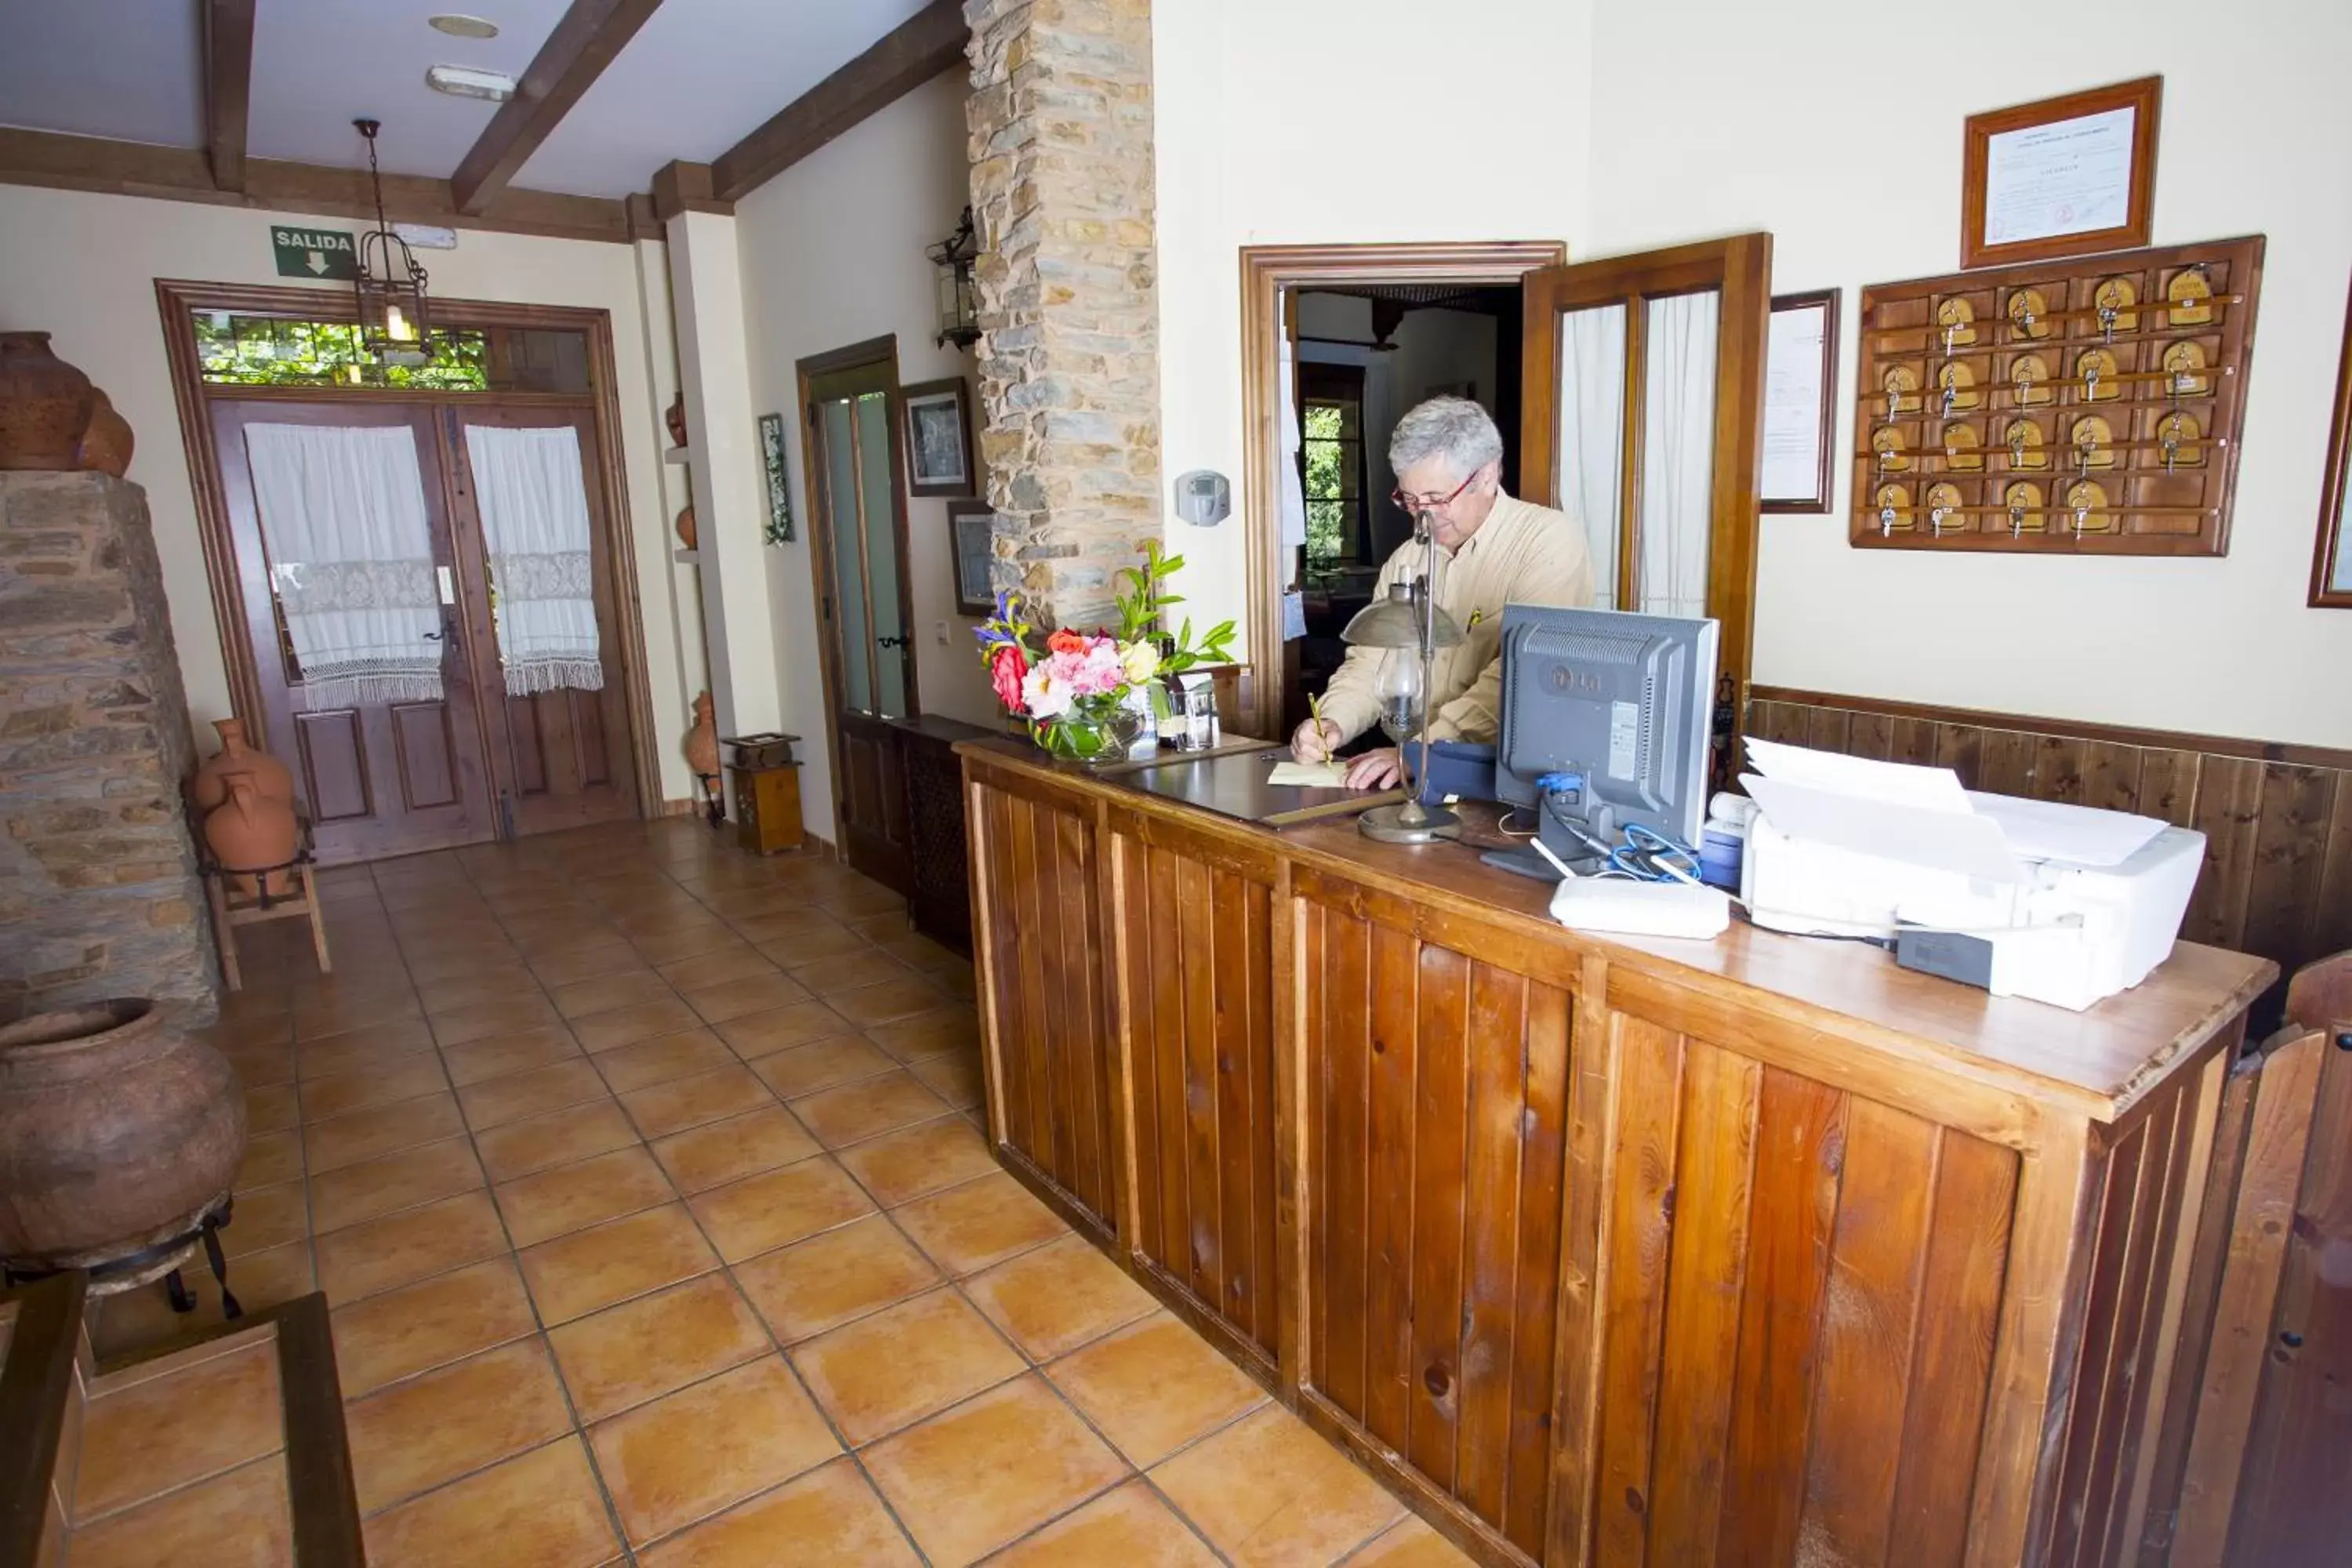 Lobby or reception, Lobby/Reception in Hotel Rural Castúo H CC 656